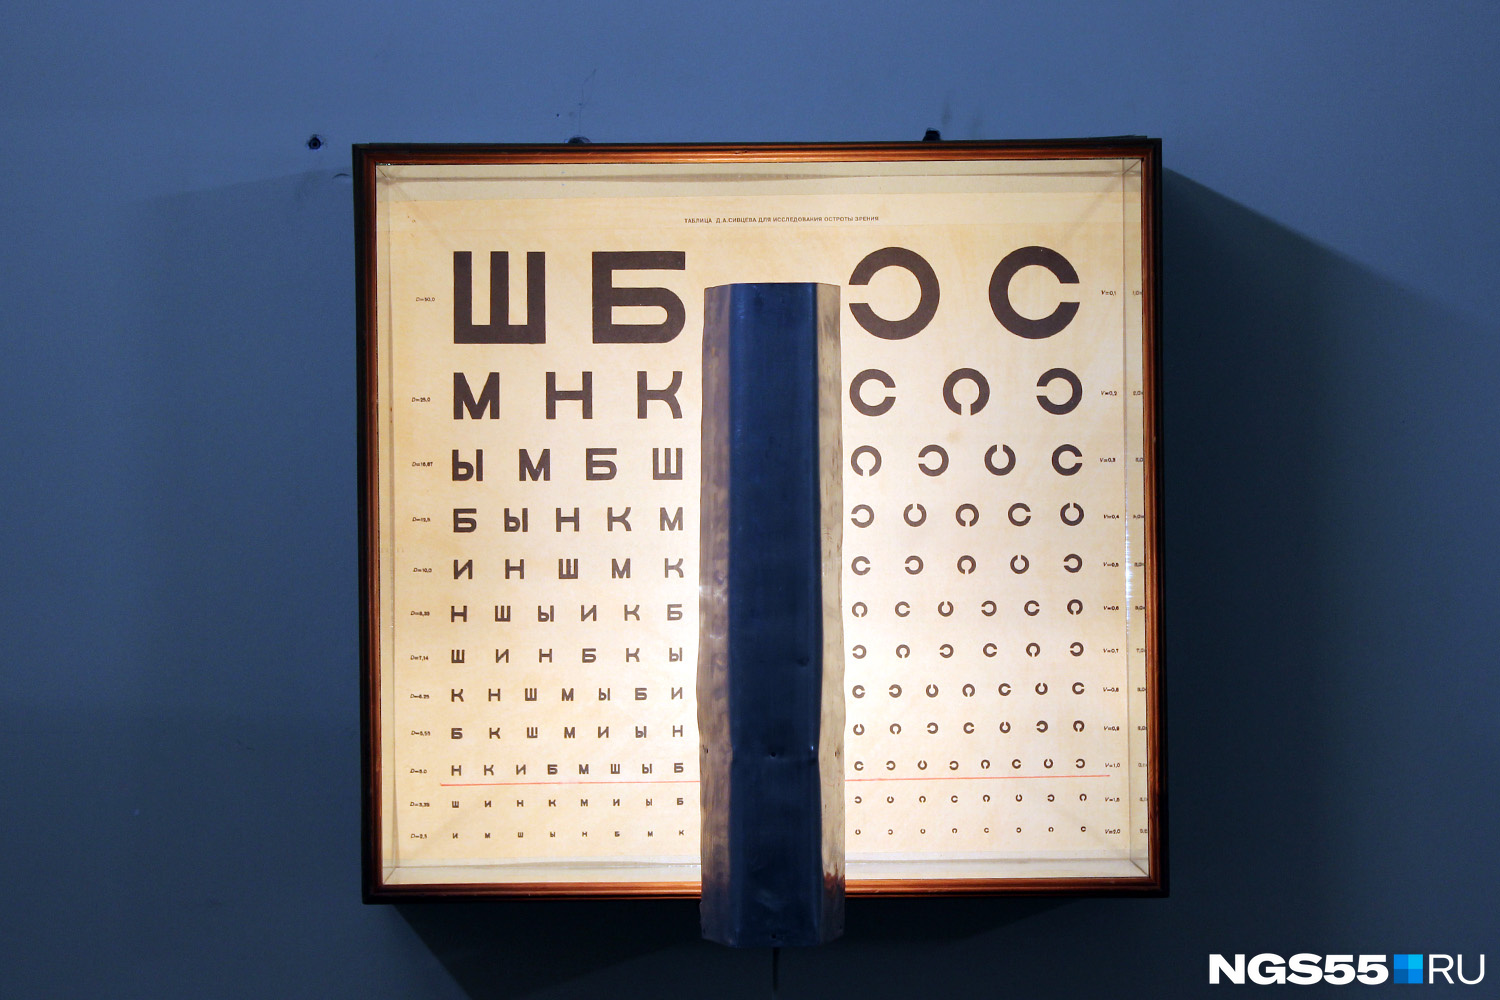 Таблица Сивцева для проверки остроты зрения. На подоконнике стоит электронный прибор — альтернатива устаревшей таблице, но офтальмологи пользуются и тем и другим